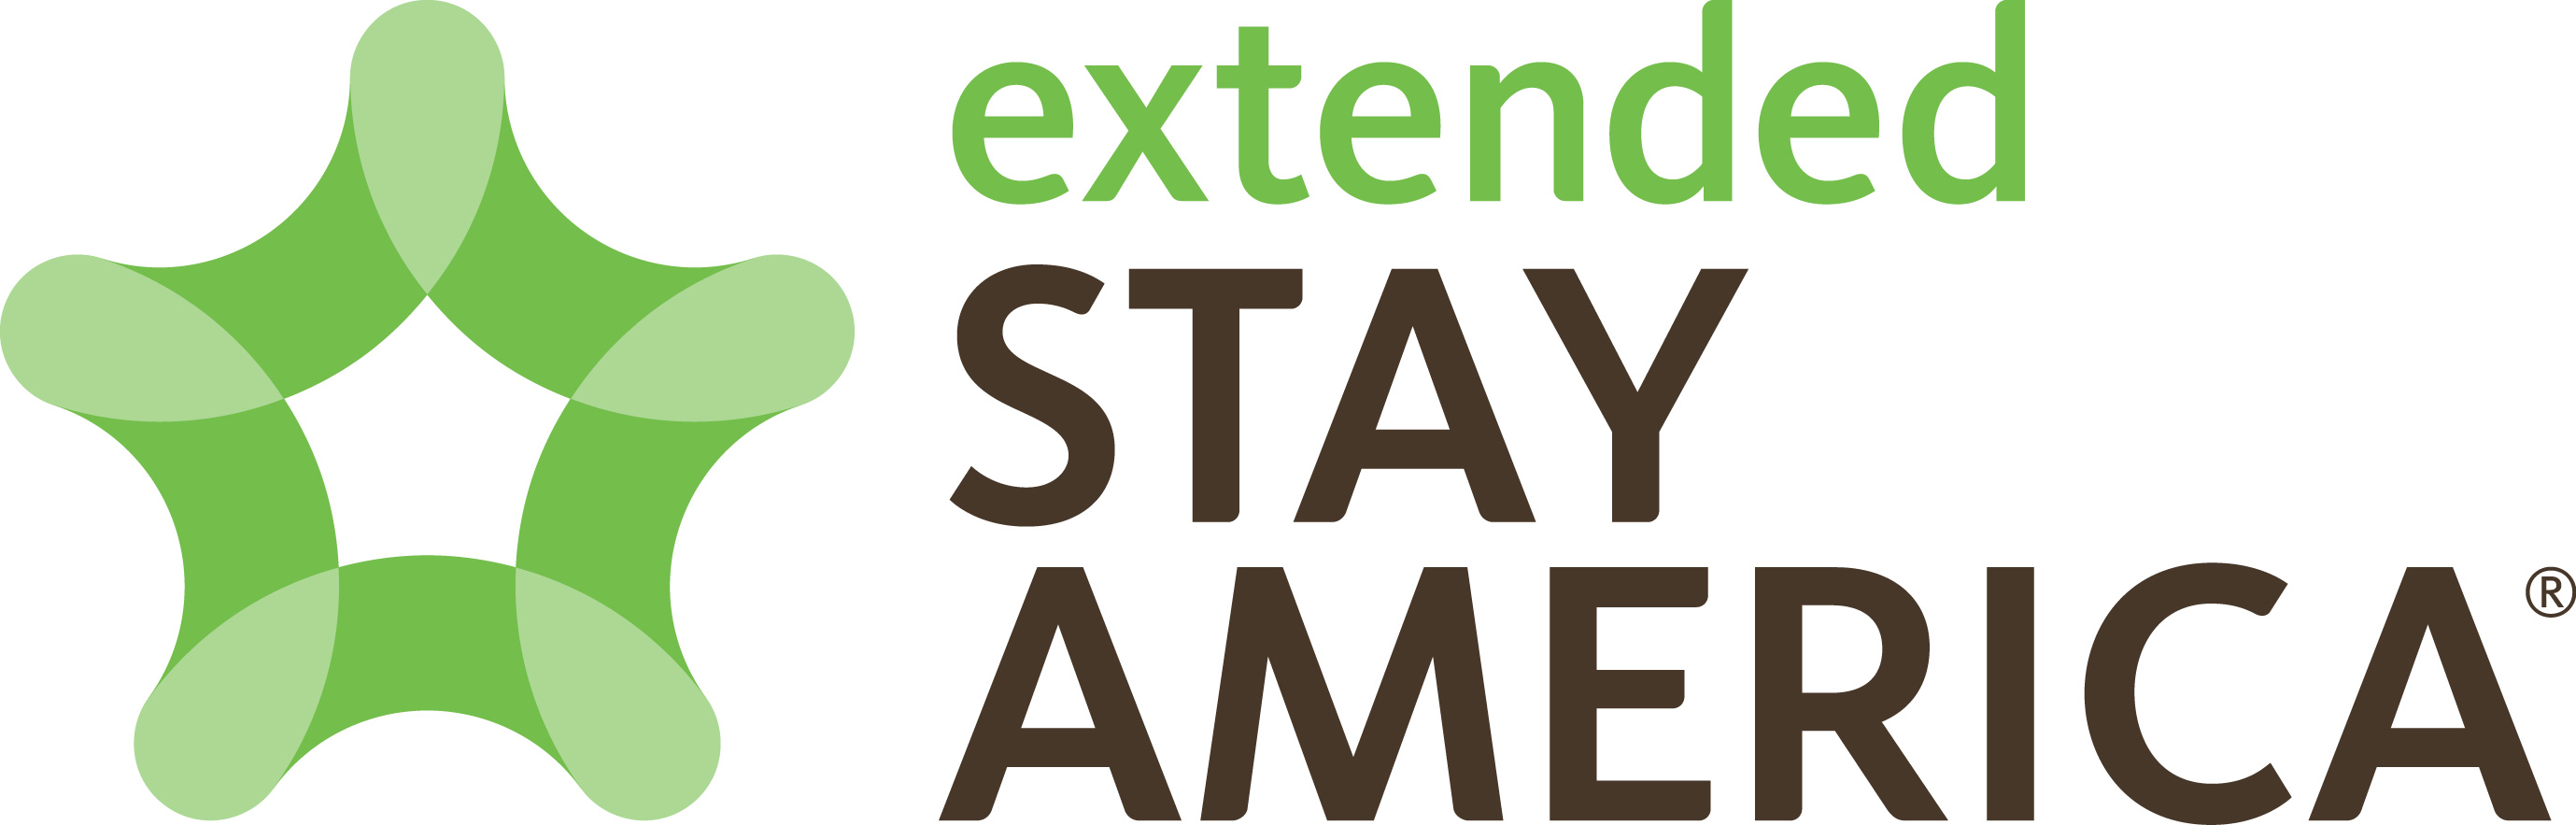 Extended Stay America napoveduje 20-odstotno rast svojega franšiznega portfelja